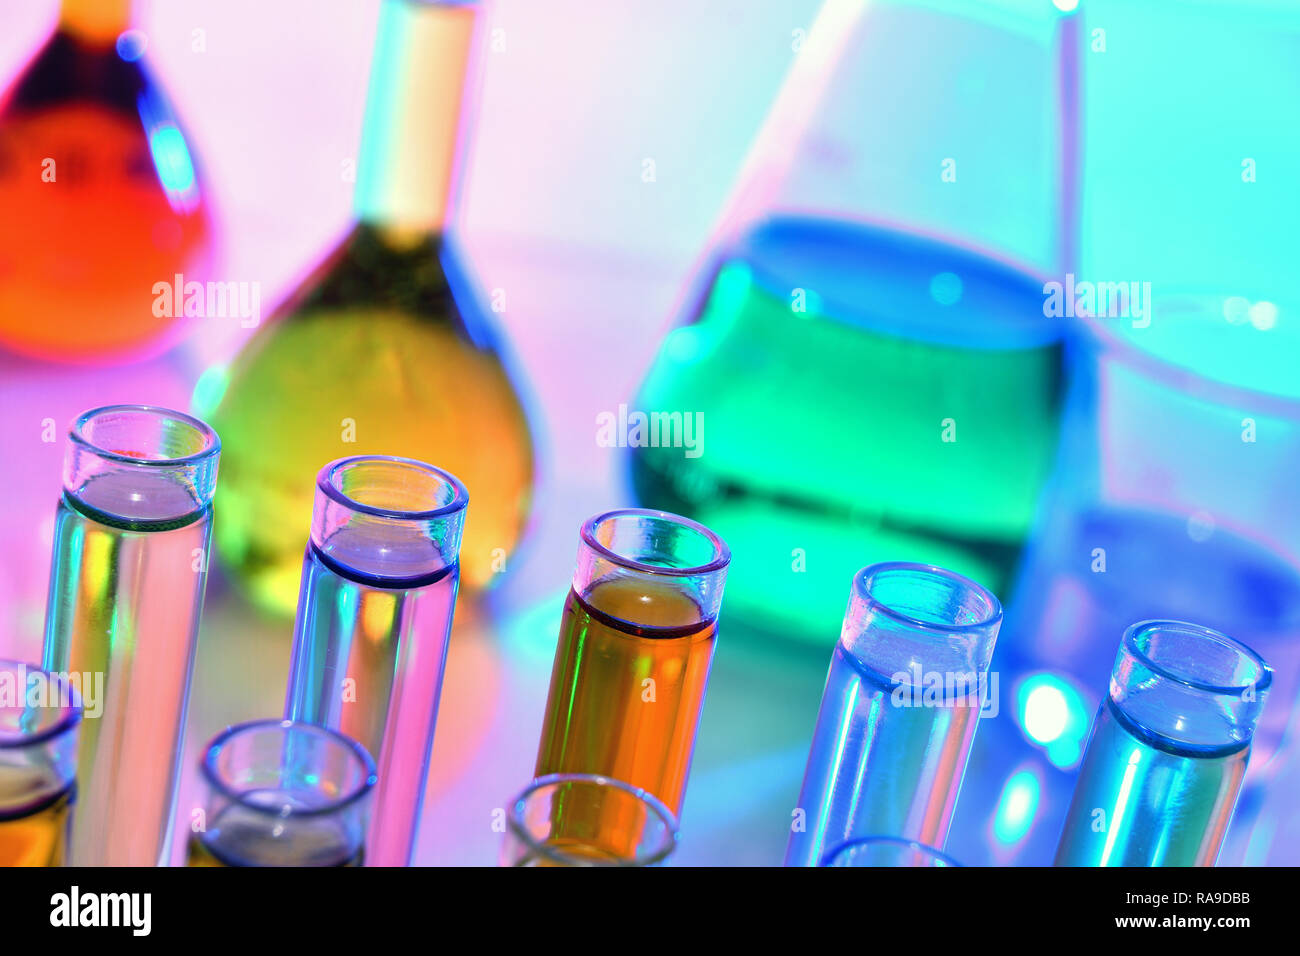 Verrerie de laboratoire avec des produits chimiques et réactifs, la science de la chimie Banque D'Images